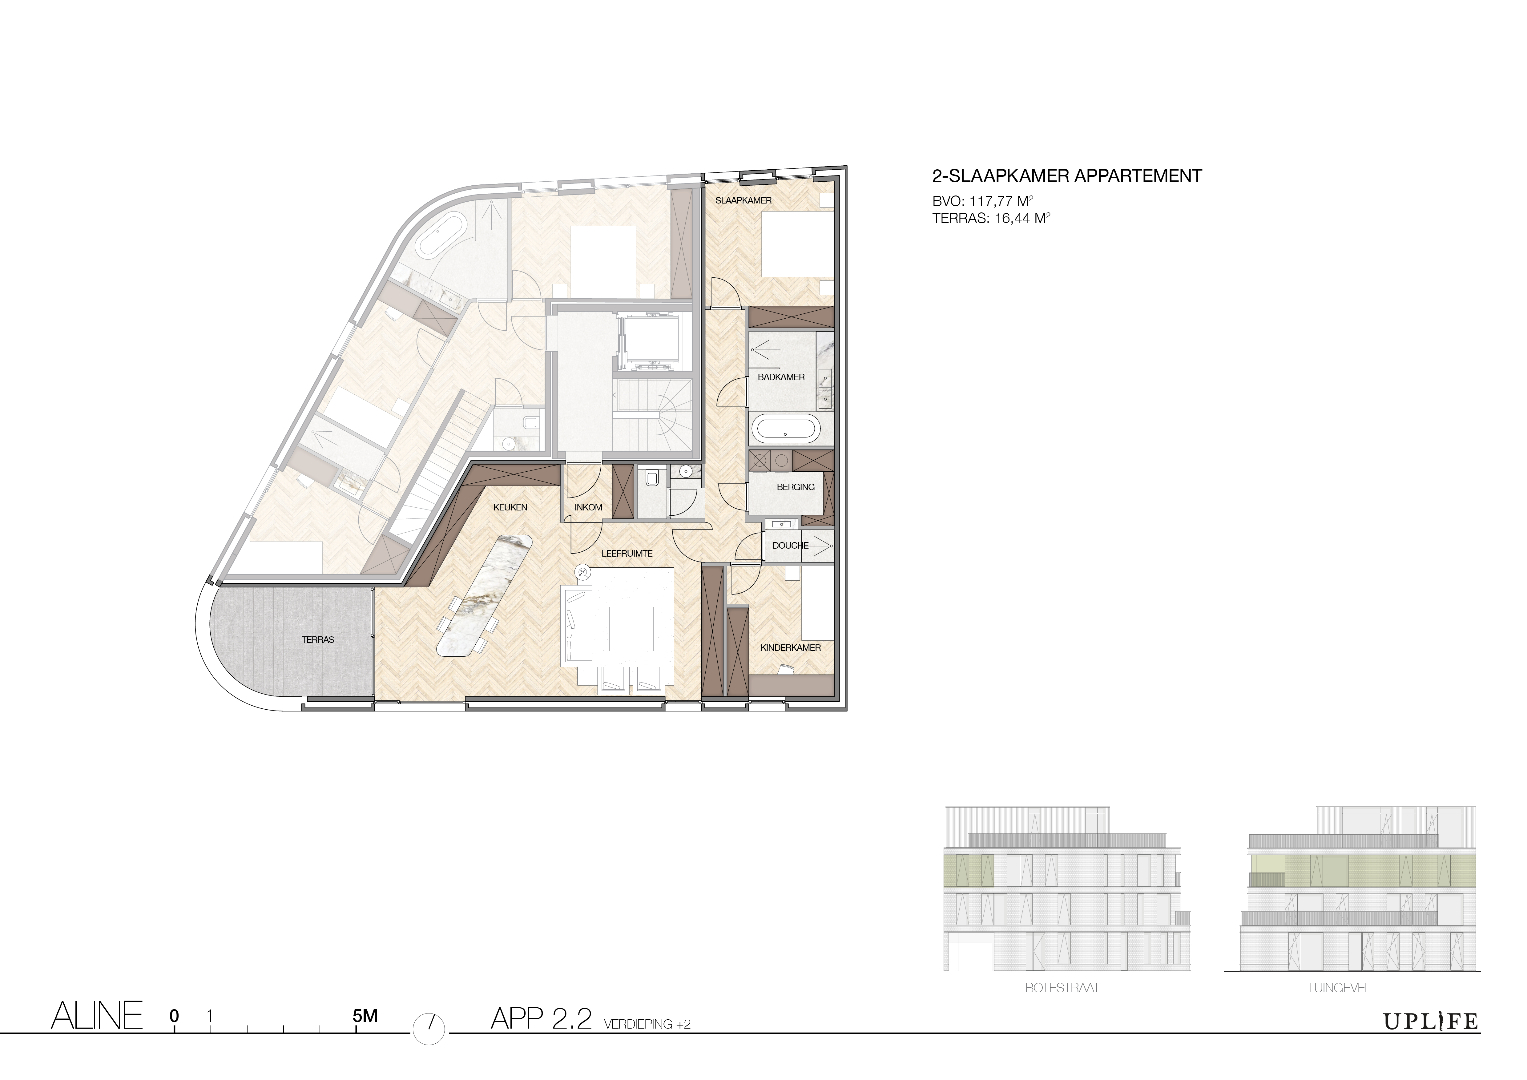 Hoogwaardig &amp; kwalitatief afgewerkt 2-slaapkamer appartement (2.2) gelegen in centrum Wondelgem. 